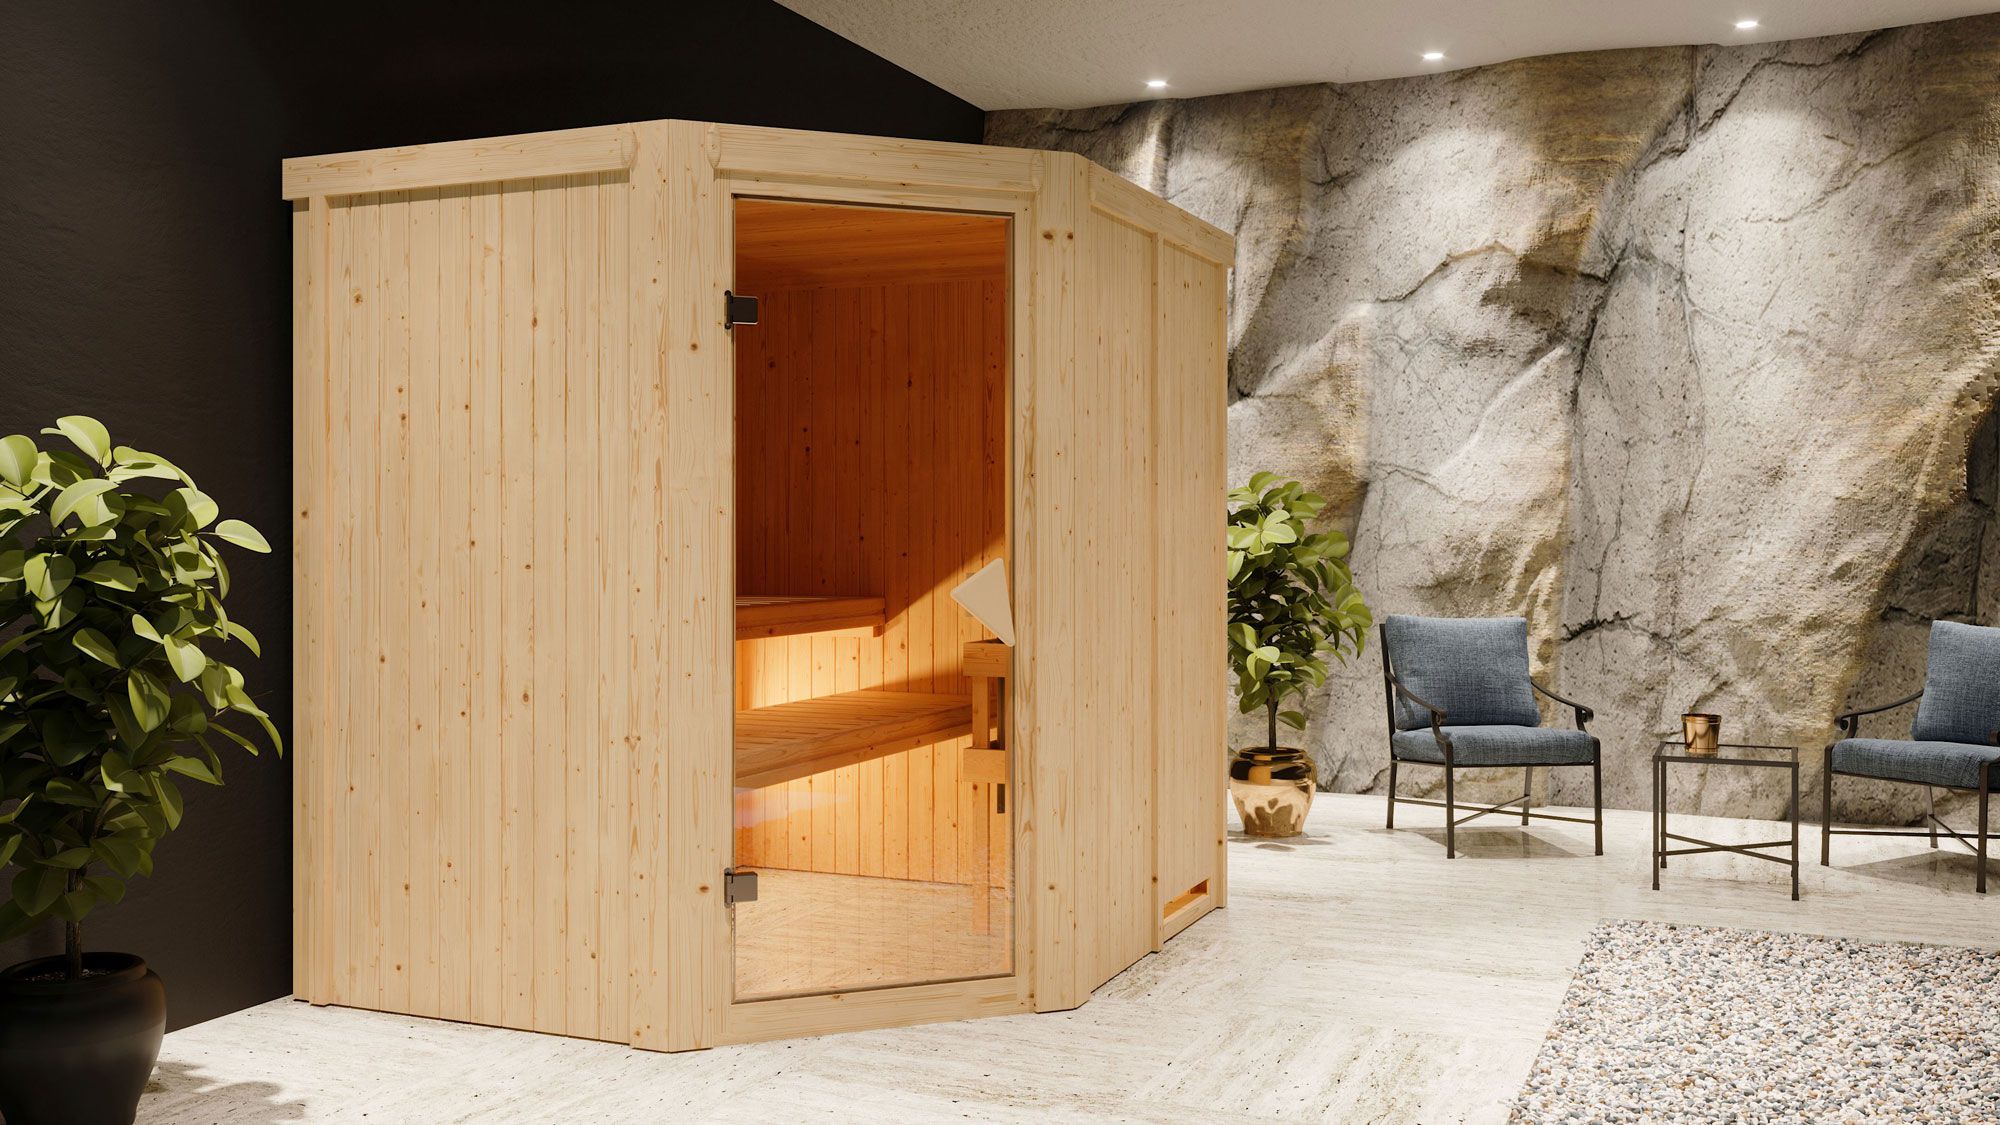 Sauna "Hanko" SET met bronskleurige deur & kachel externe regeling eenvoudig 9 kW roestvrij staal - 196 x 170 x 198 cm (B x D x H)